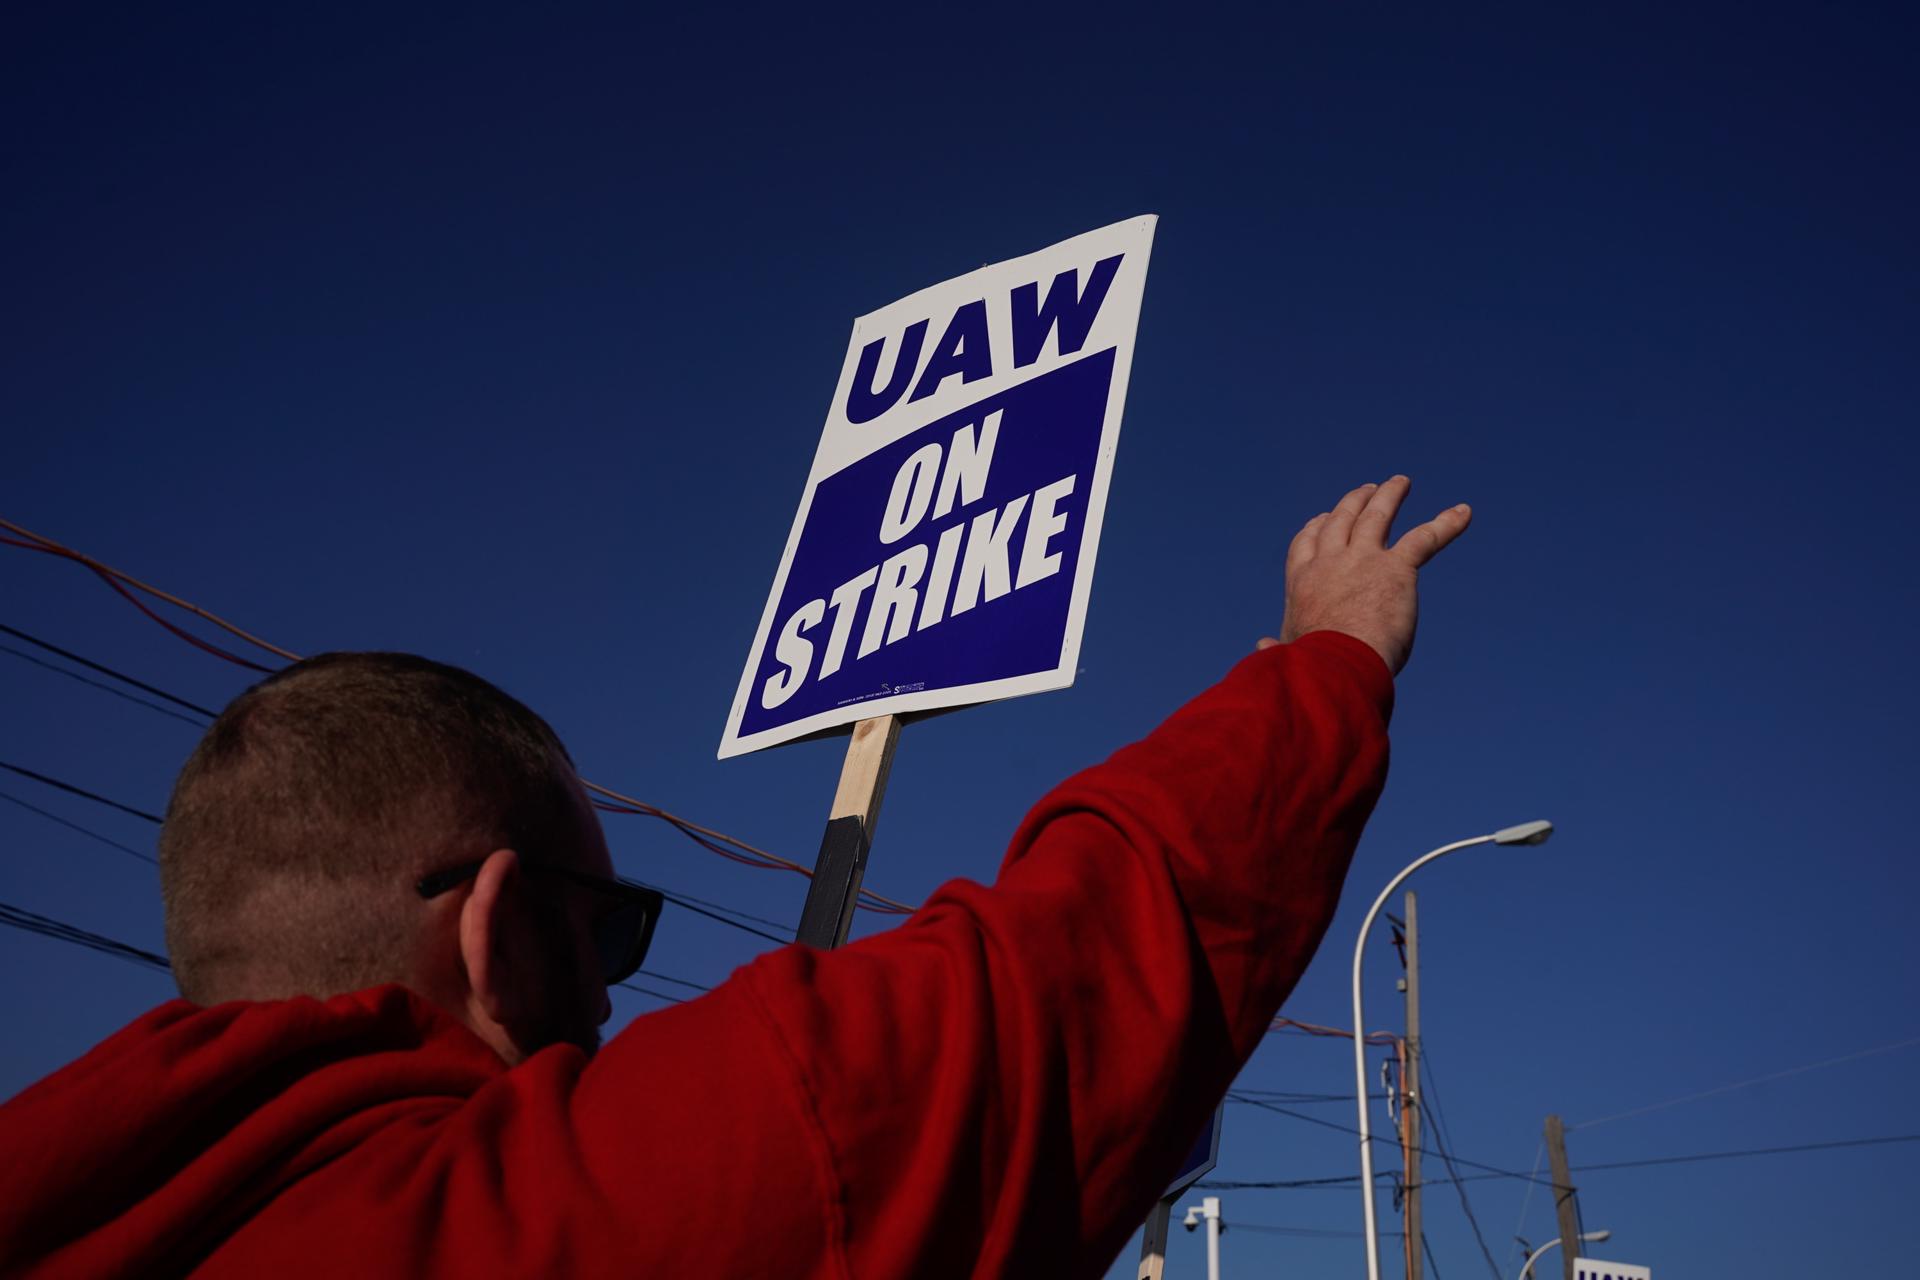 Un miembro del sindicato United Auto Workers (UAW) protesta, en una fotografía de archivo. EFE/EPA/DIEU-NALI CHERY